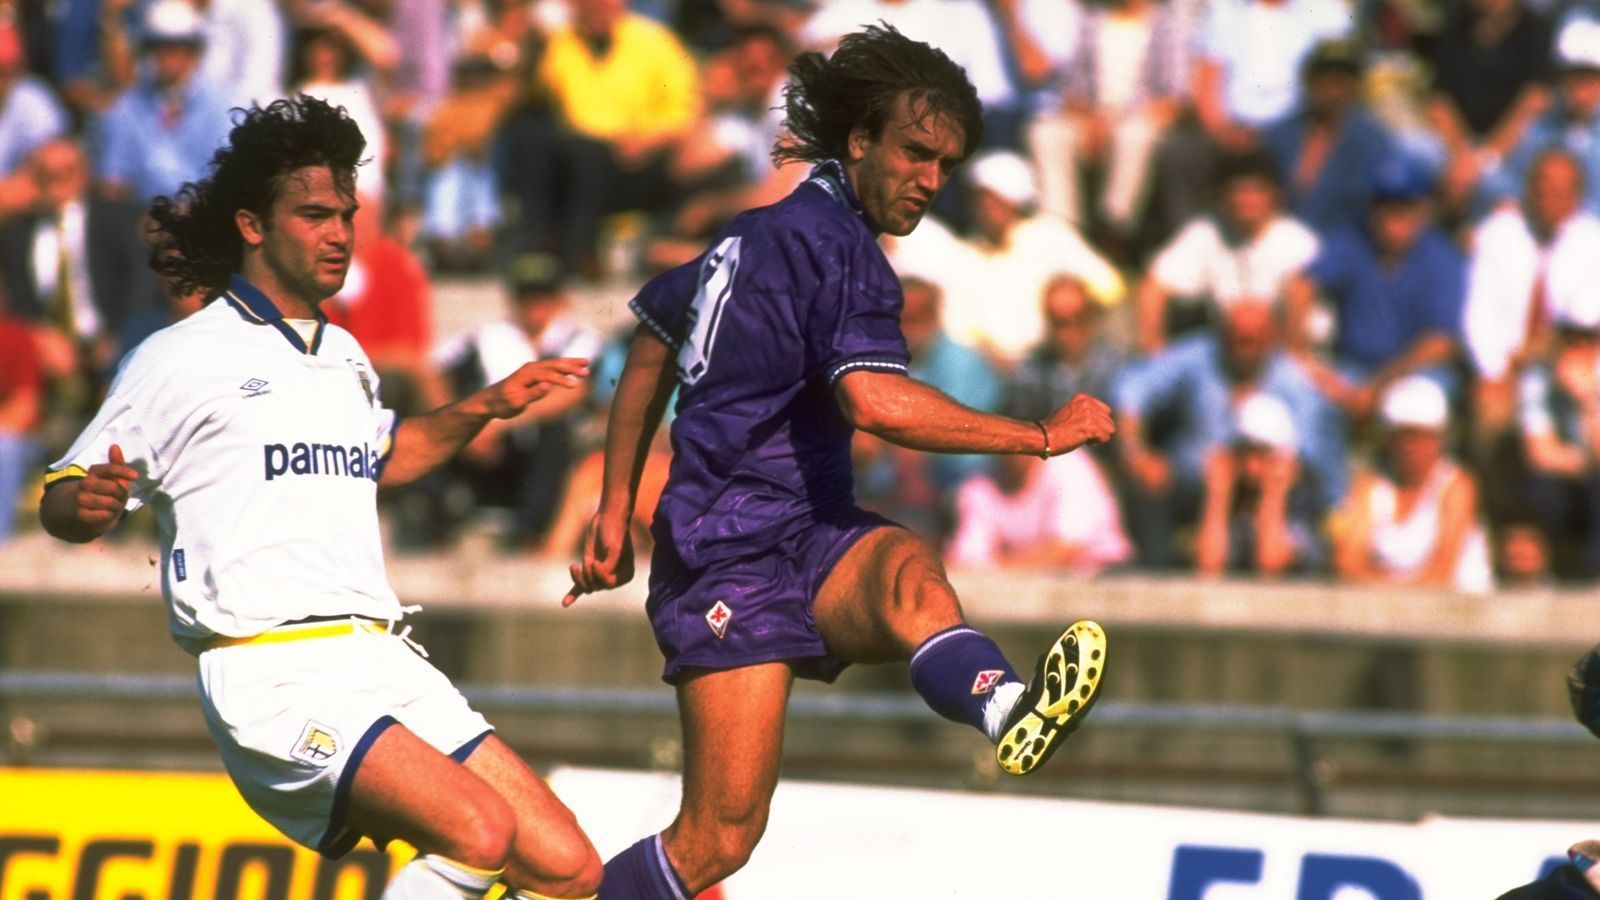 
                <strong>Italien: Gabriel Batistuta - 11 Spiele </strong><br>
                Das war in der höchsten italienischen Liga bisher nur Gabriel Batistuta in der Saison 1994/95 bei der Fiorentina gelungen. Quagliarella, der diese Woche seinen 36. Geburtstag feiert, kann sich kommendes Wochenende mit einem weiteren Tor zum alleinigen Rekordhalter machen.
              